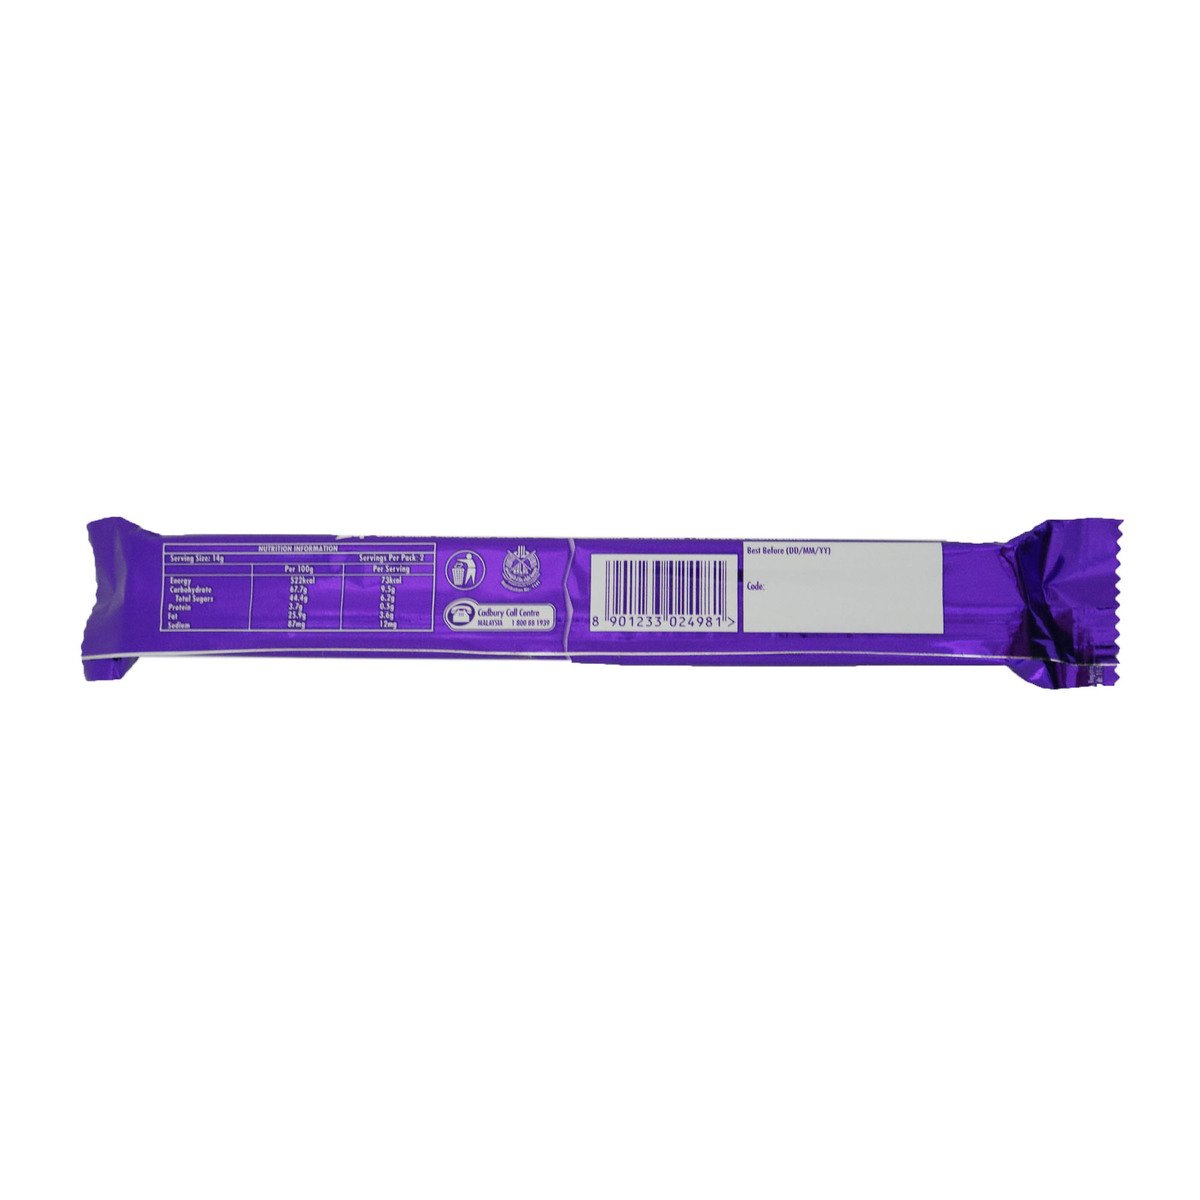 Cadbury Chocolate Zip 31.7g